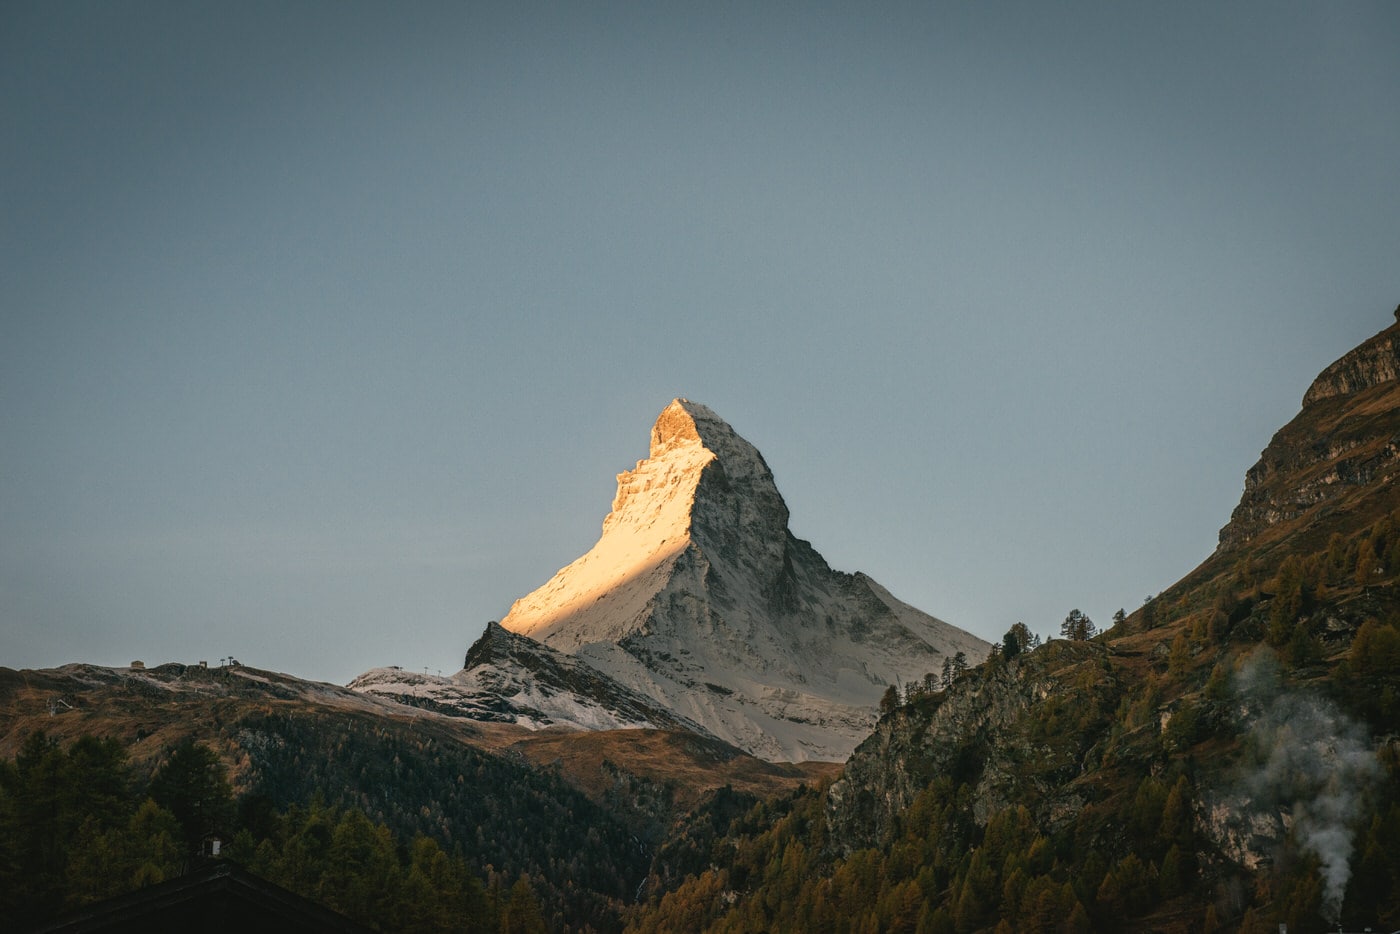 The Matterhorn viewed from Zermatt